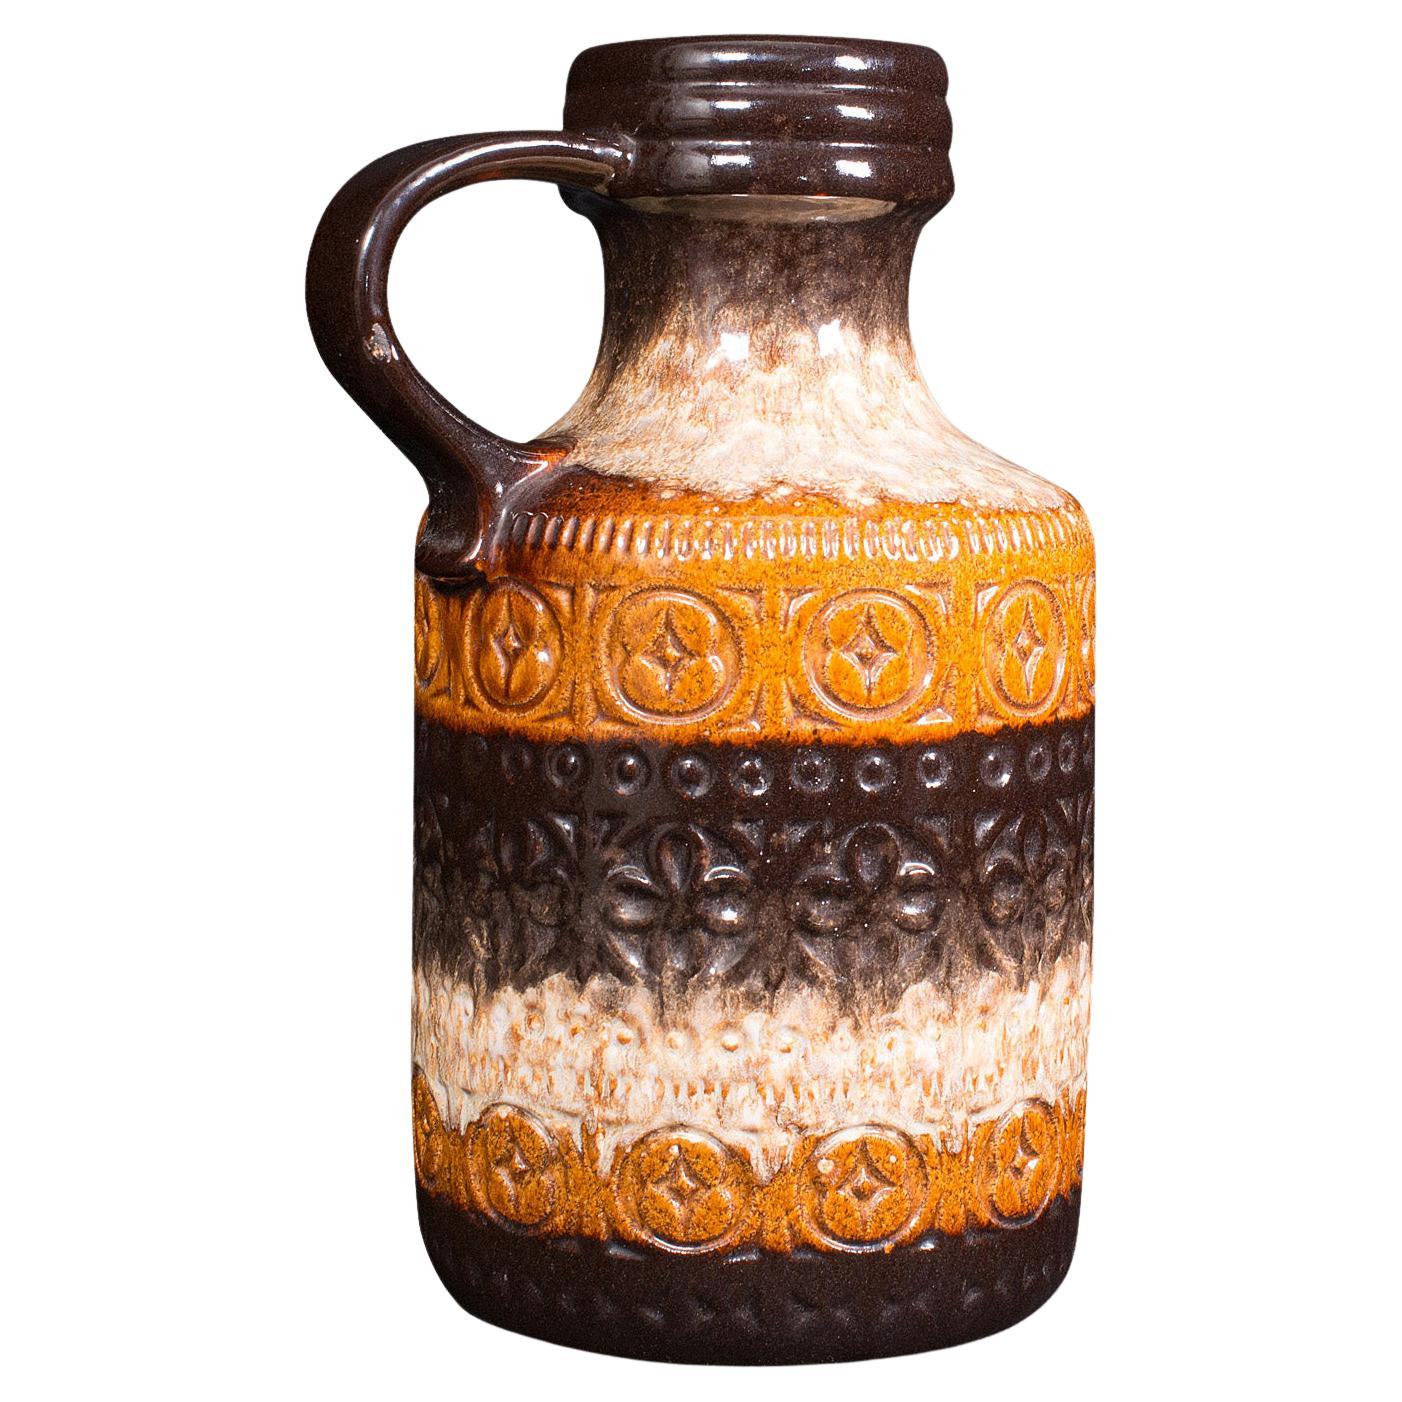 Vintage Decorative Jug, German Ceramic, Lava, Serving Ewer, Flower Vase, C.1960